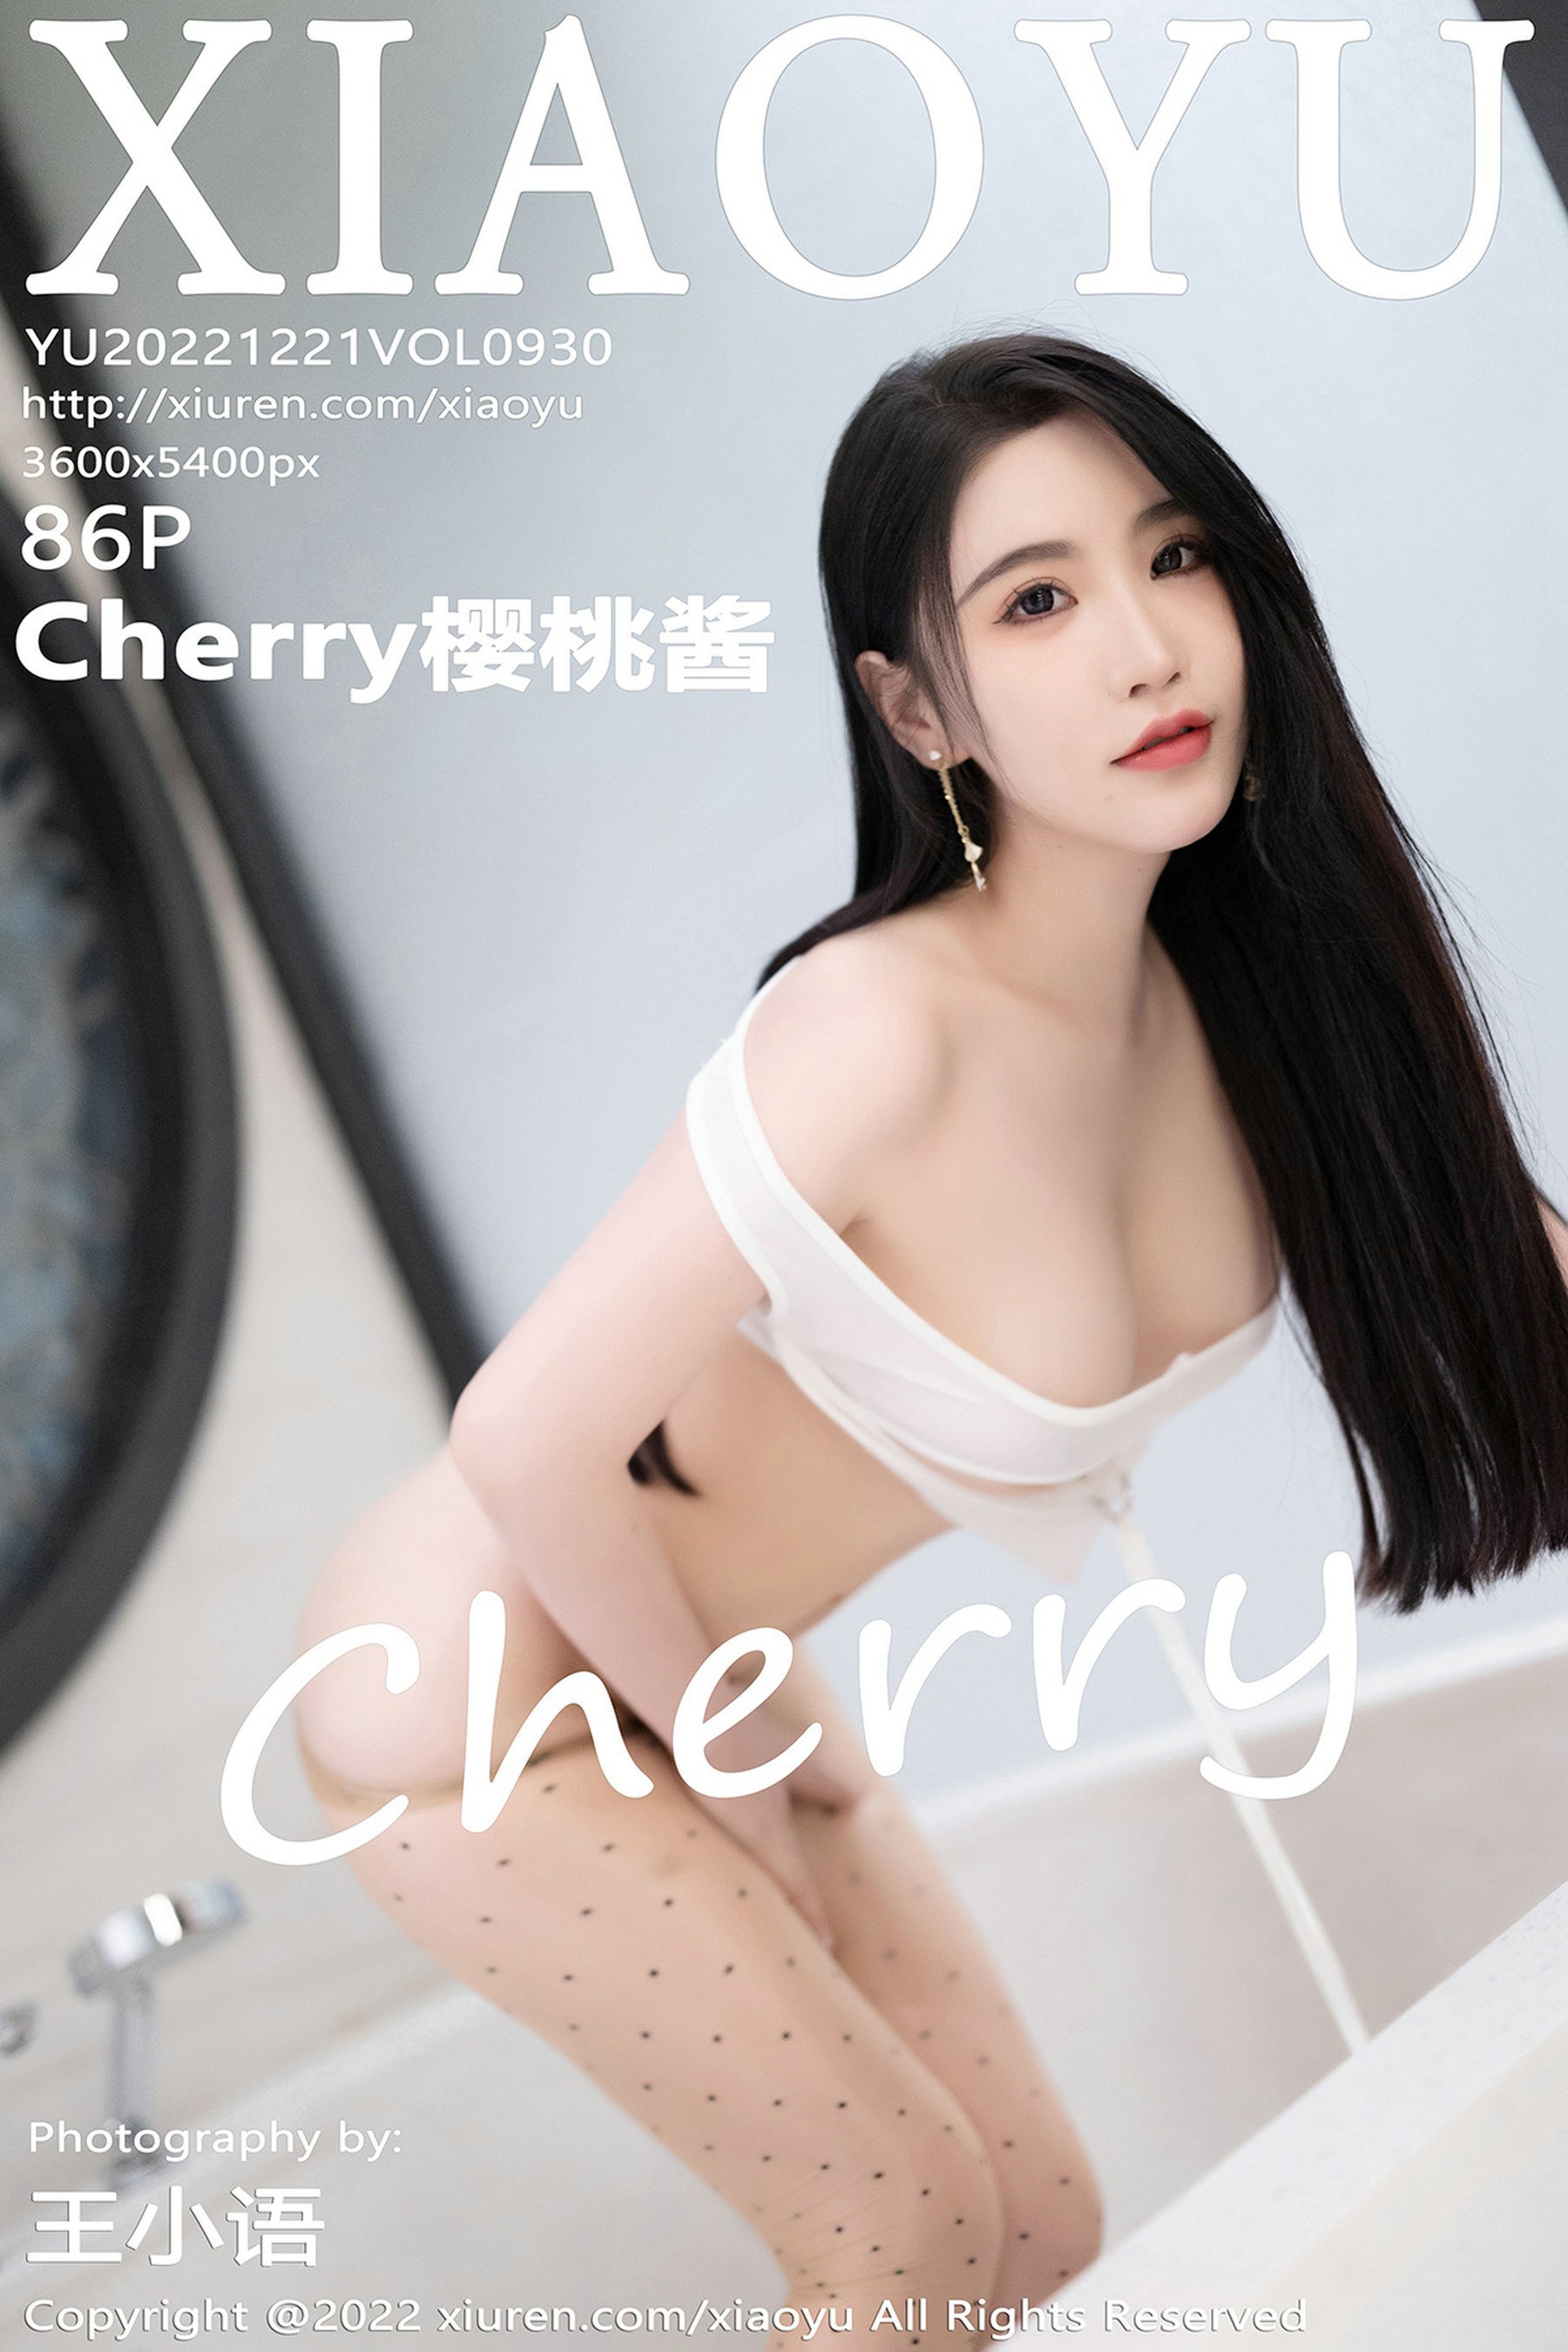 [语画界XIAOYU] Vol.930 Cherry樱桃酱  第1张